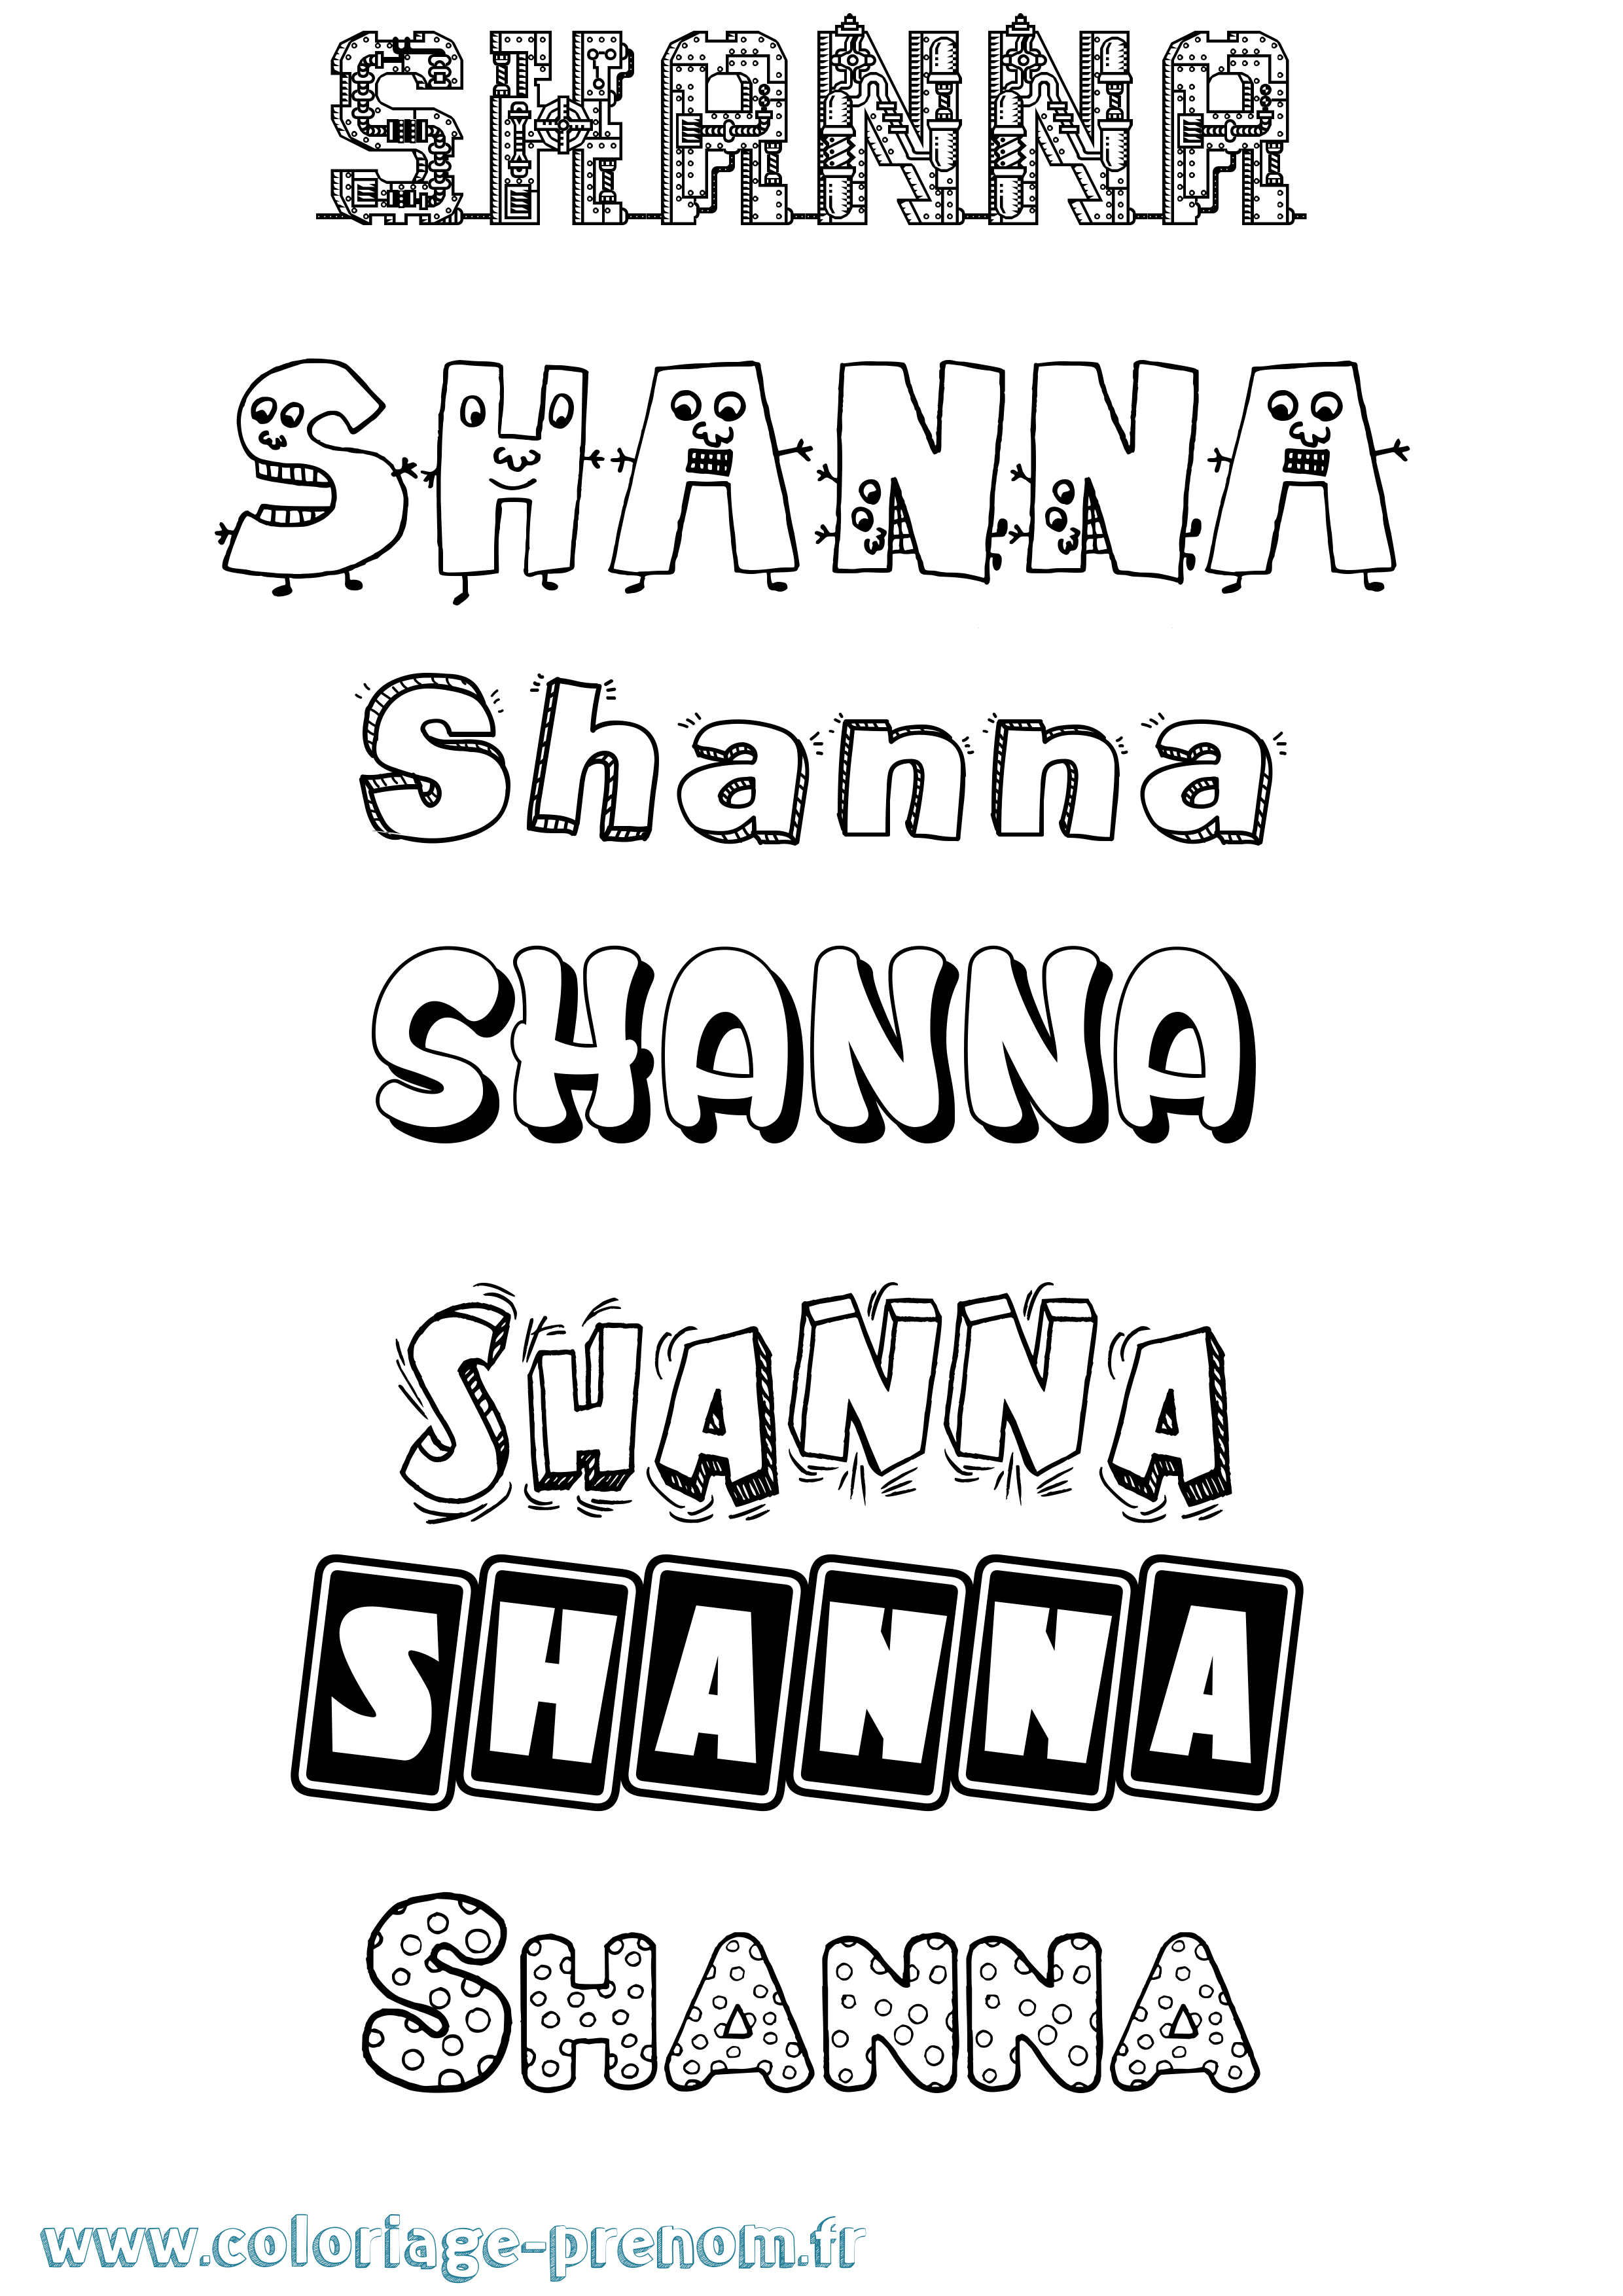 Coloriage prénom Shanna